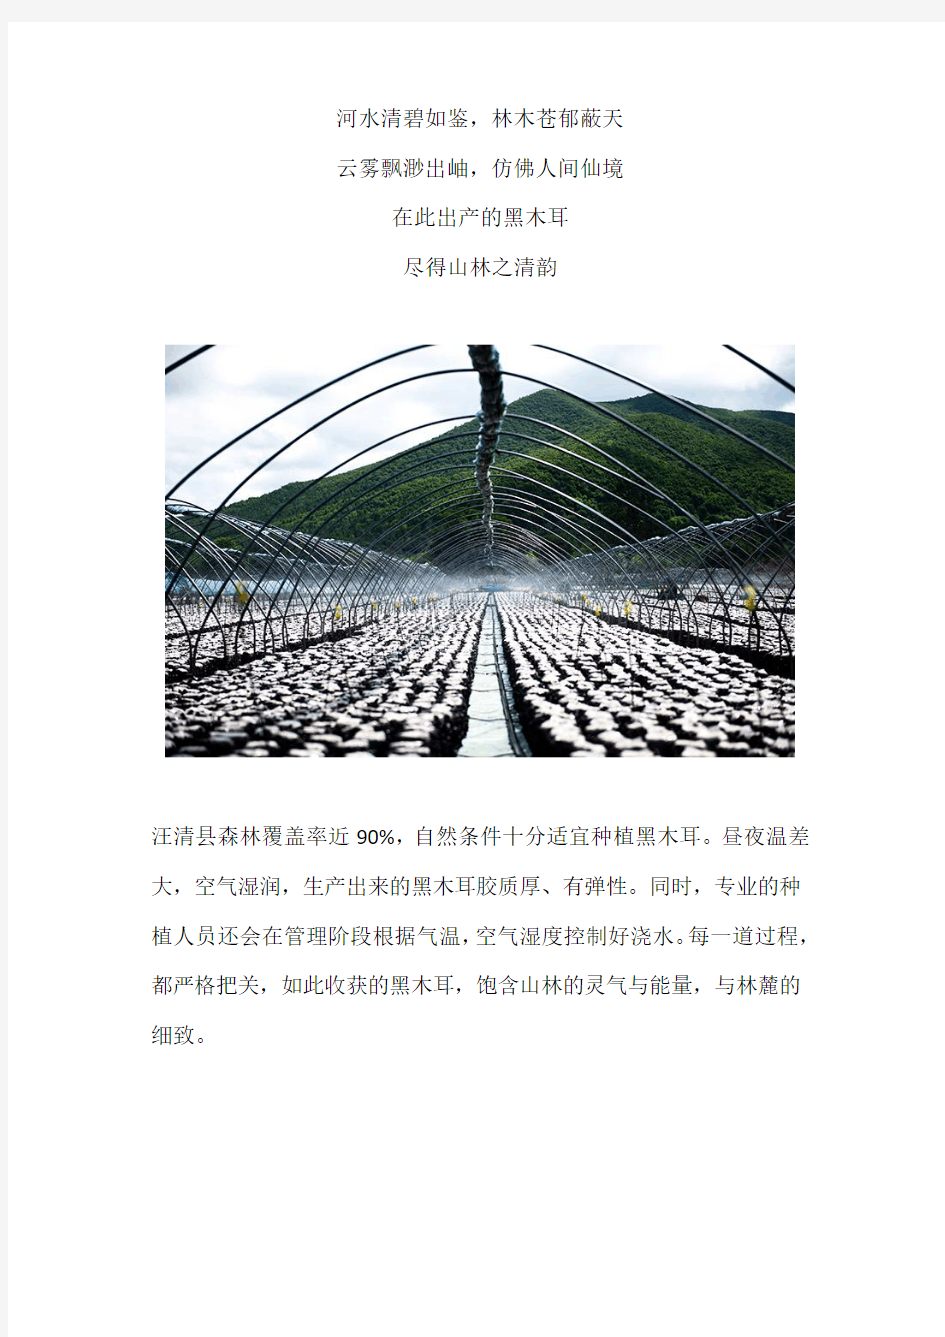 汪清县三家企业被评为“吉林长白山黑木耳”区域公用品牌生产基地